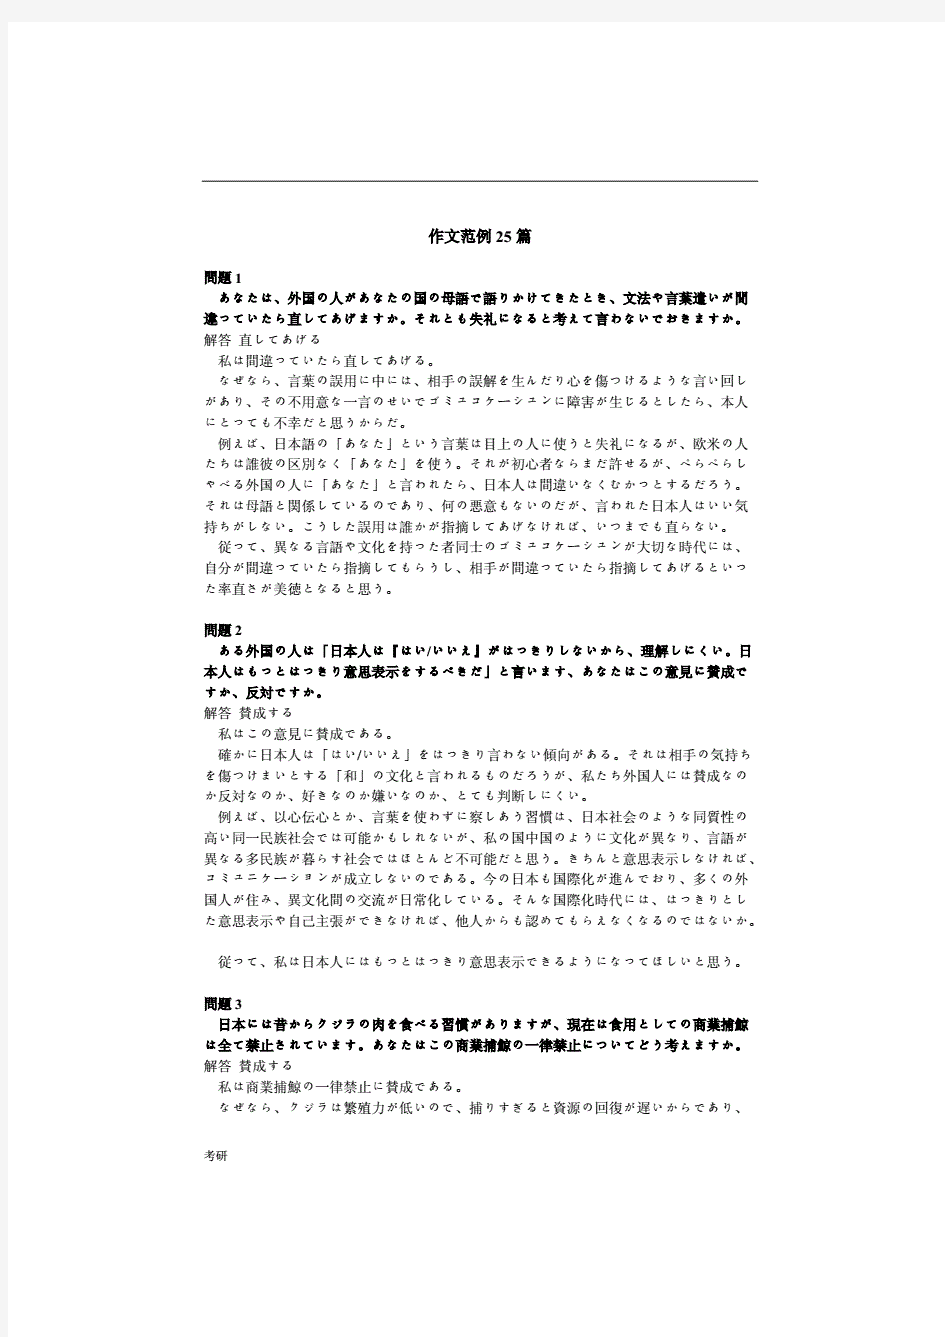 考研资料公共日语作文范例26篇